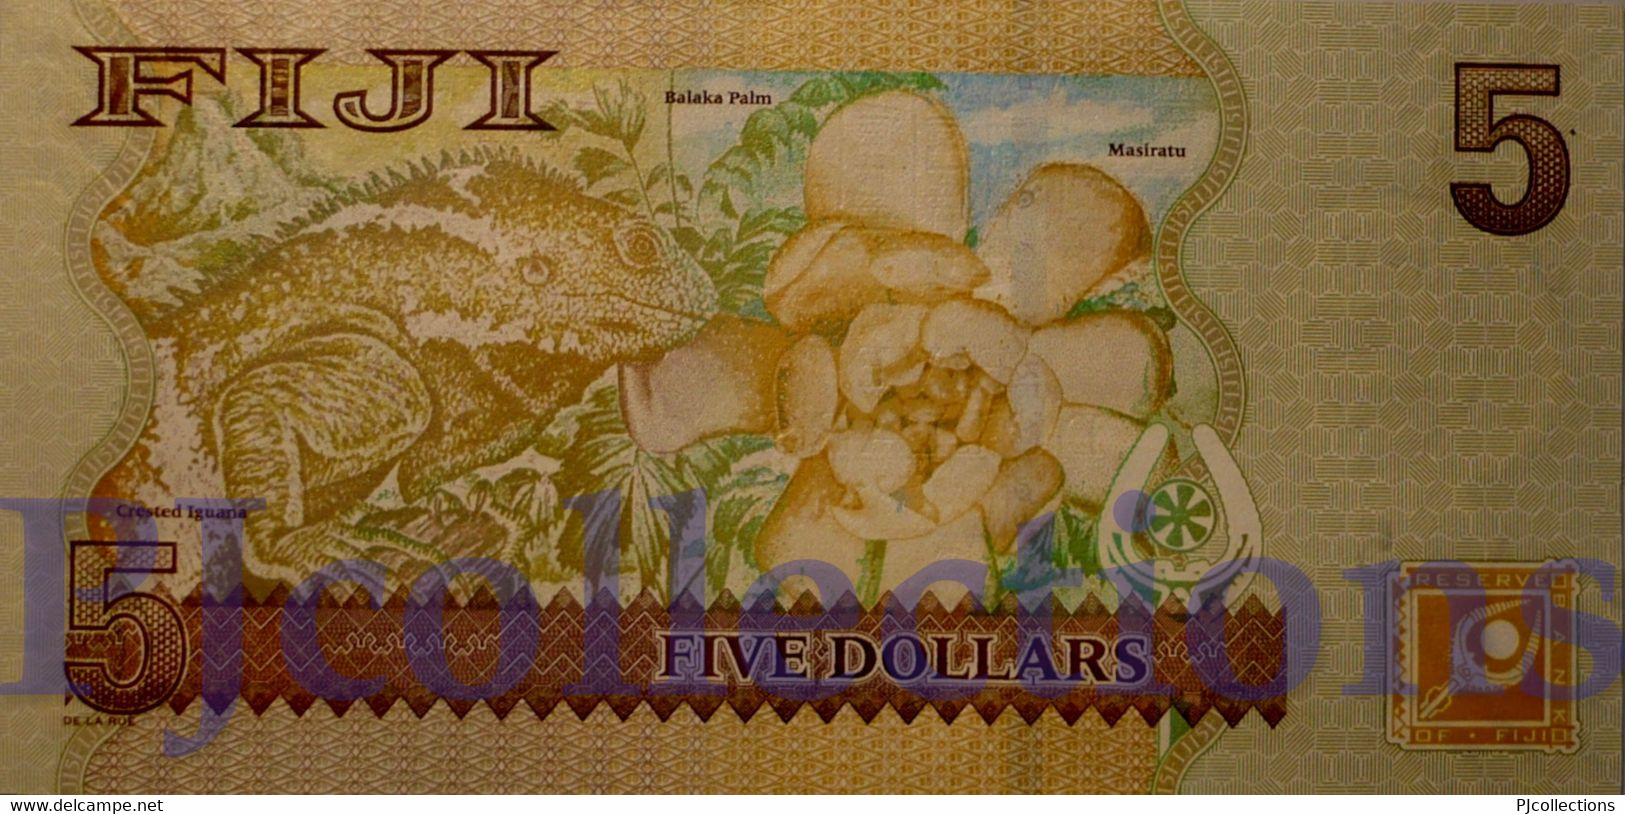 FIJI 5 DOLLARS 2007 PICK 110b UNC - Fidji